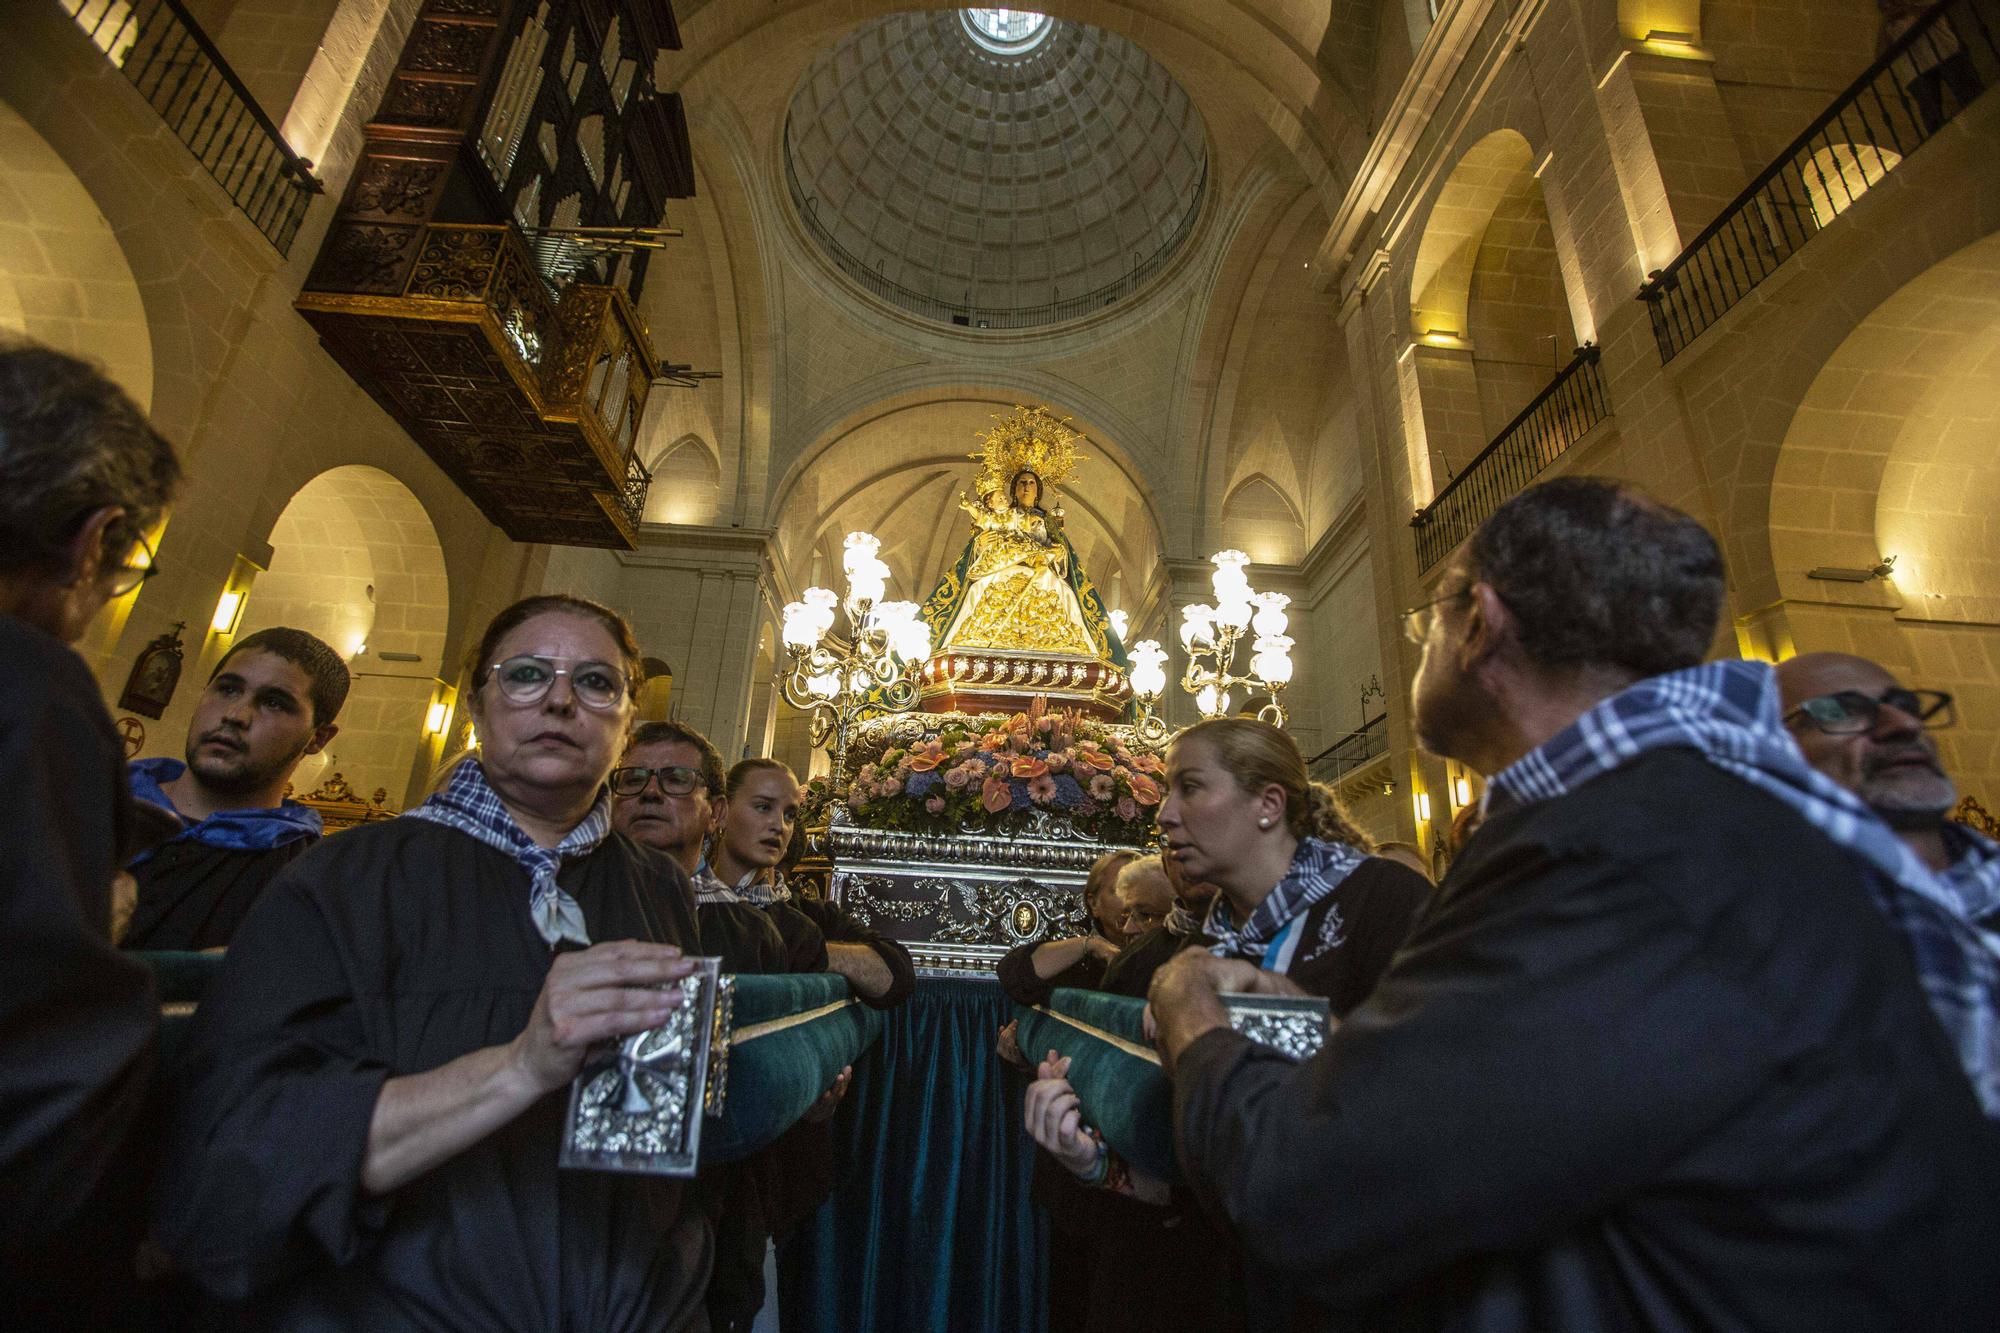 La Patrona de Alicante, la Virgen del Remedio, vuelve a recorrer las calles tras el parón de la pandemia